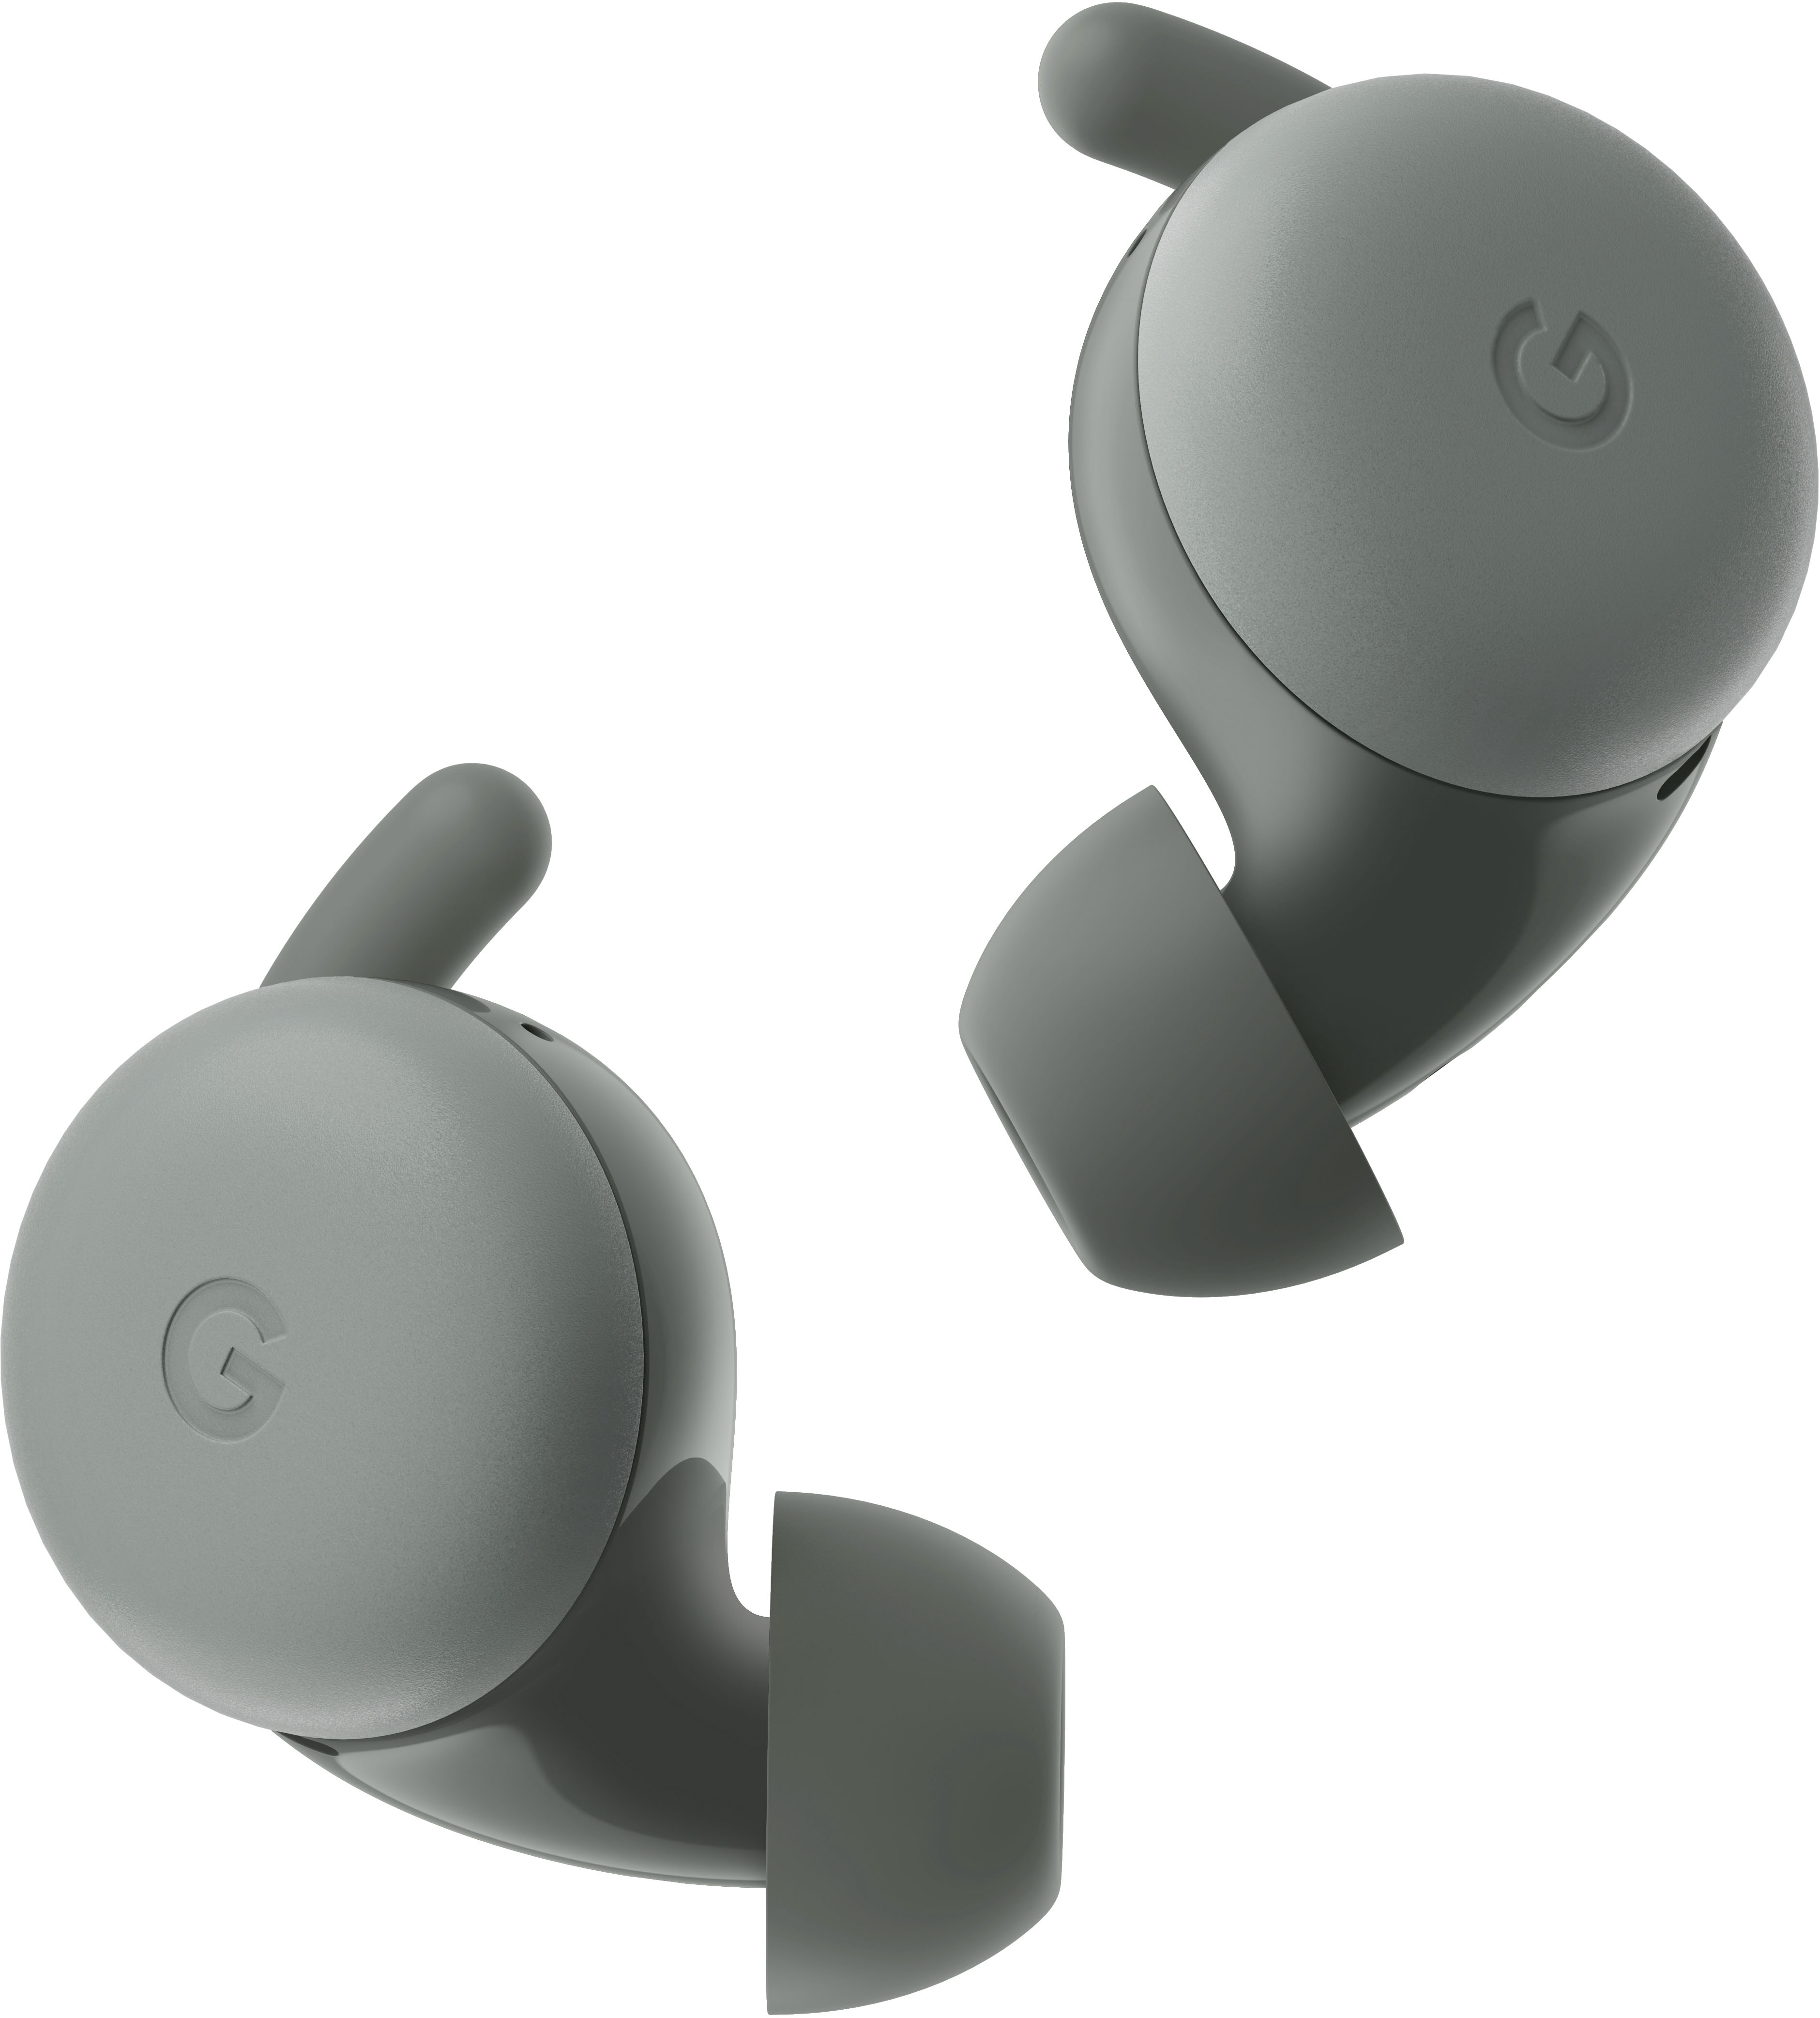 Google Pixel Buds True Wireless In-Ear Headphones Clearly White GA01470-US  - Best Buy